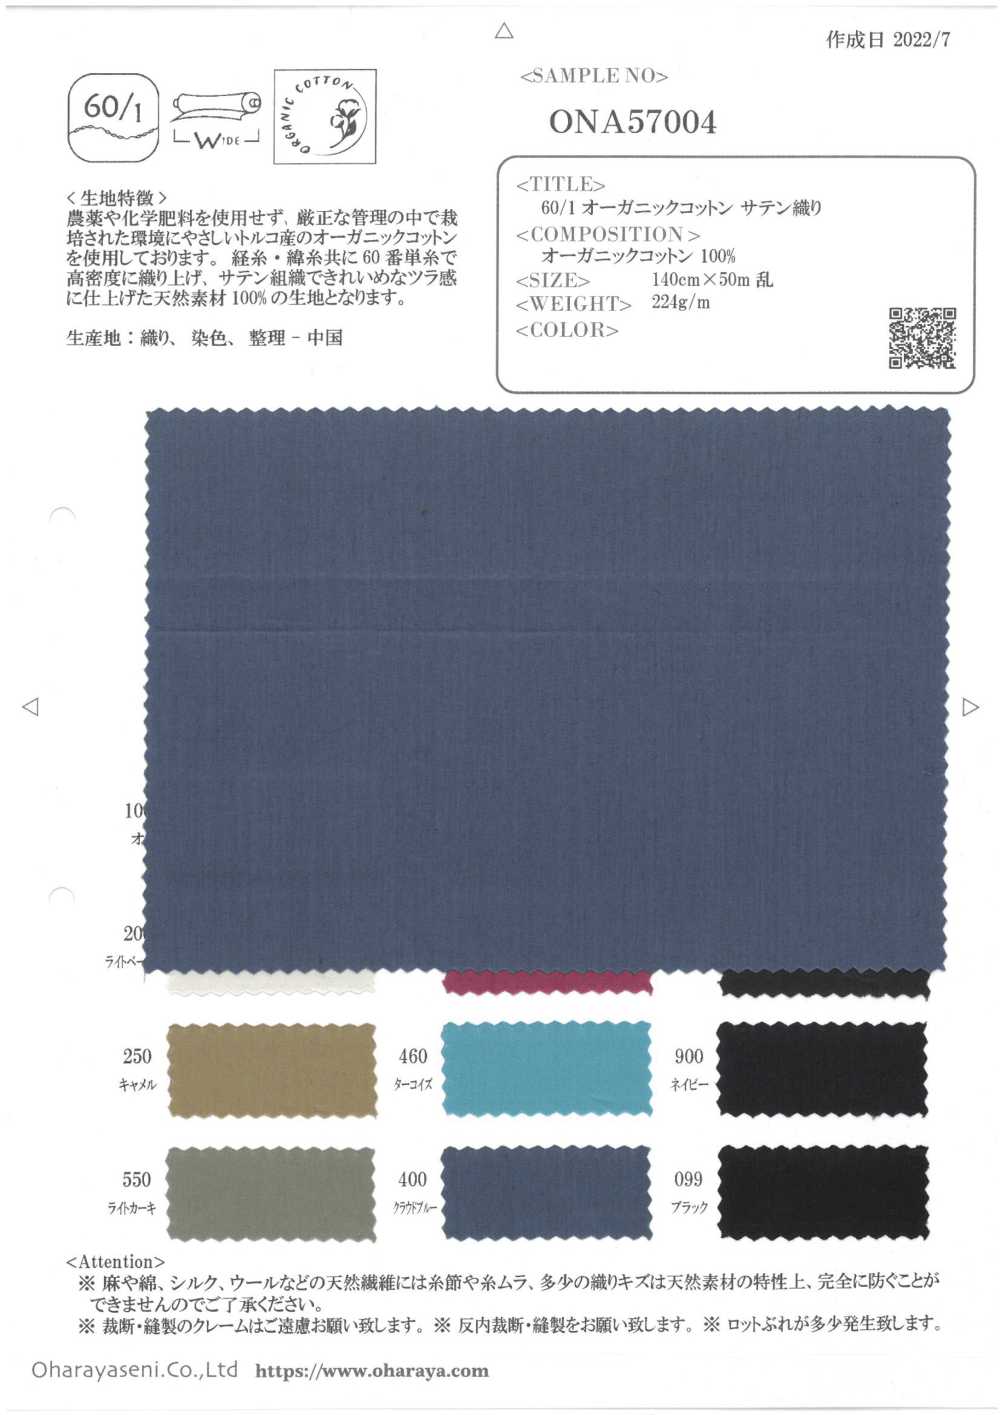 ONA57004 Satén De Algodón Orgánico 60/1[Fabrica Textil] Oharayaseni